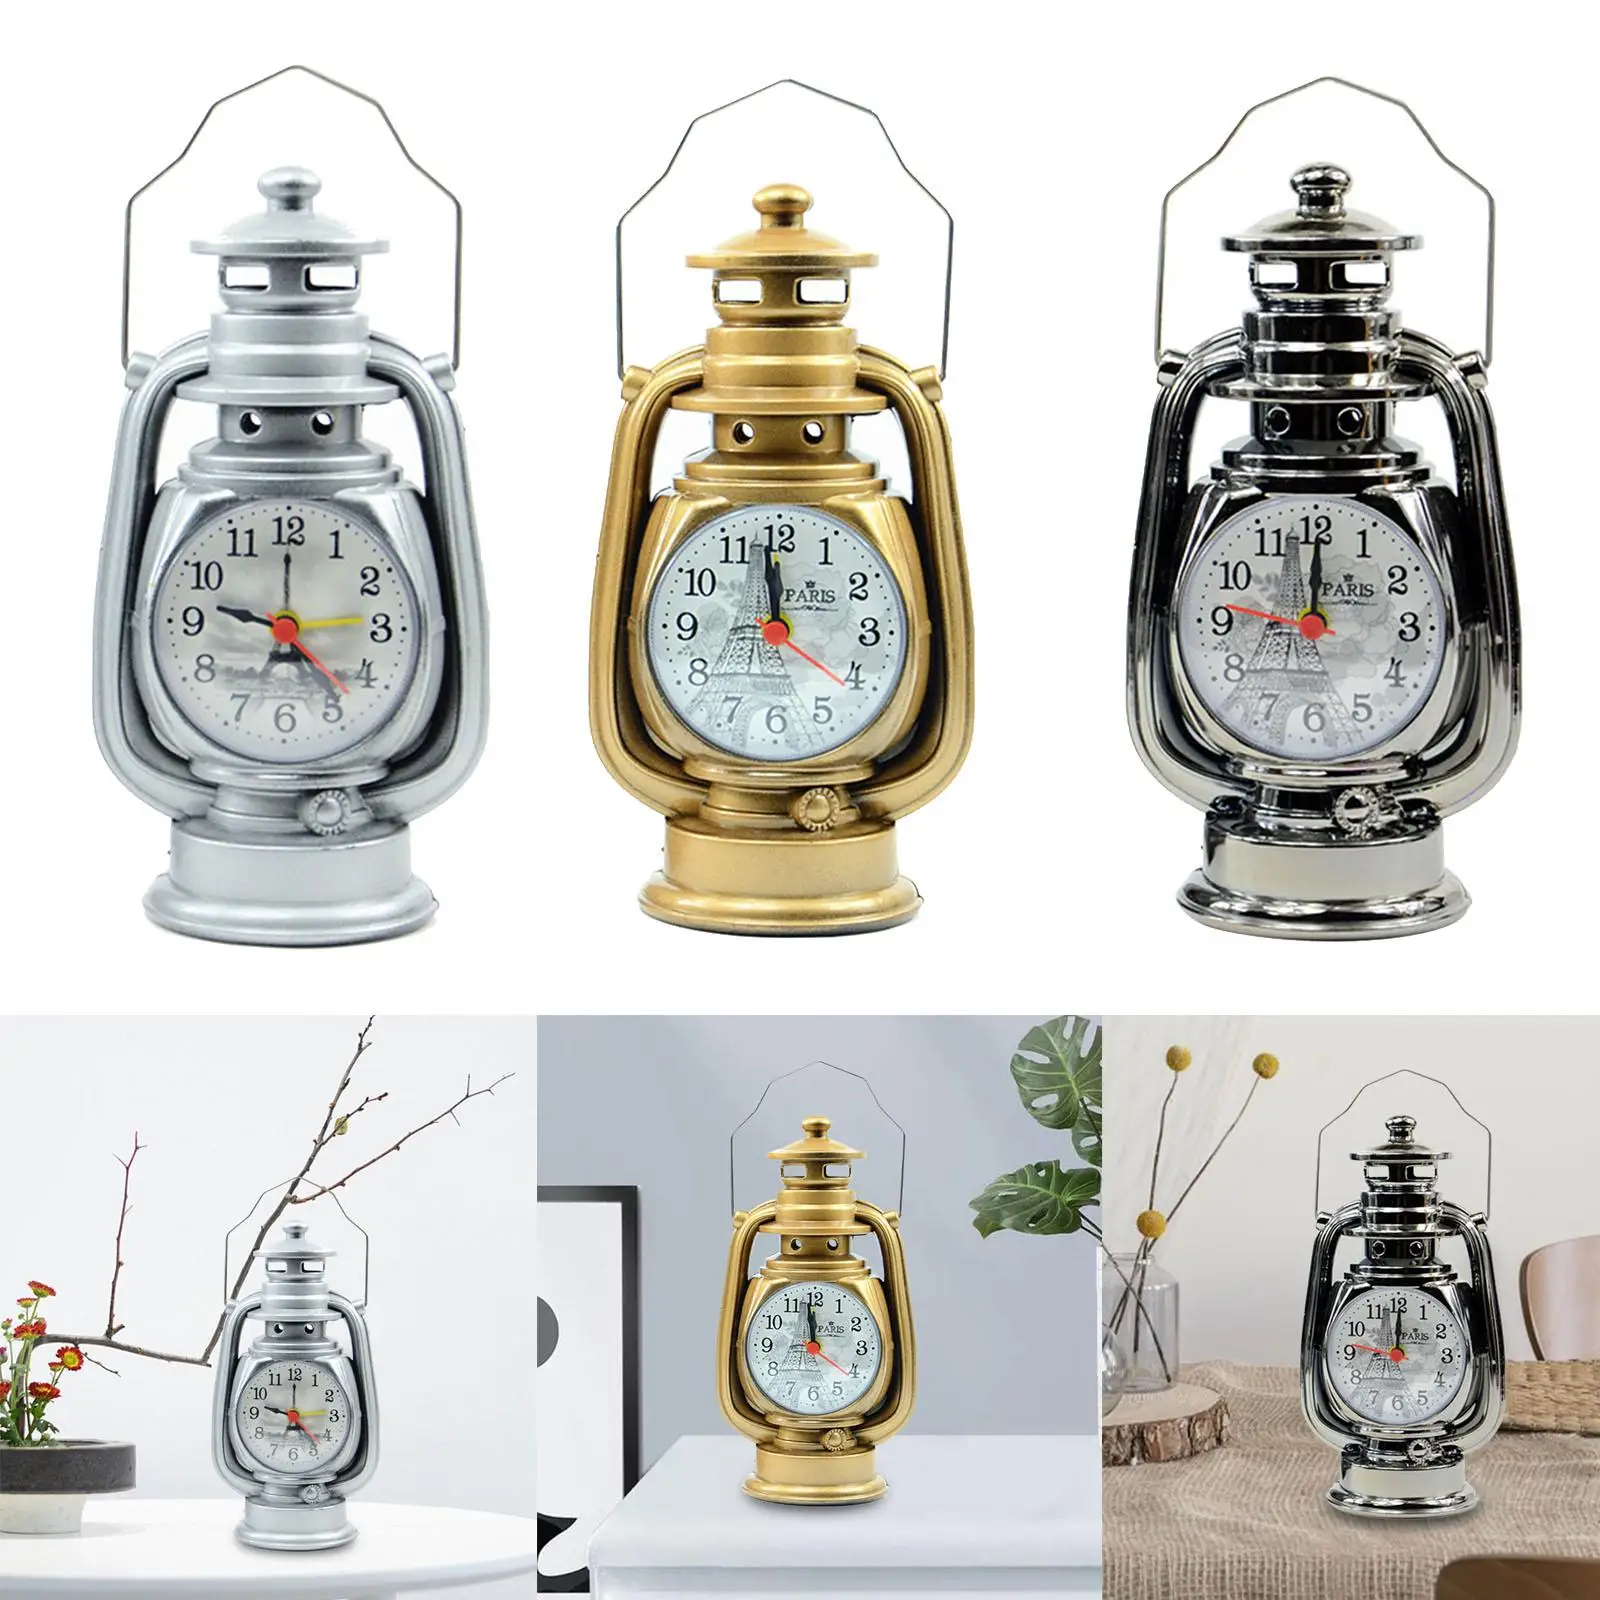 Oil Lamp Alarm Clock Classical Kerosene Light Gift Table Clock for Living Room Shelf